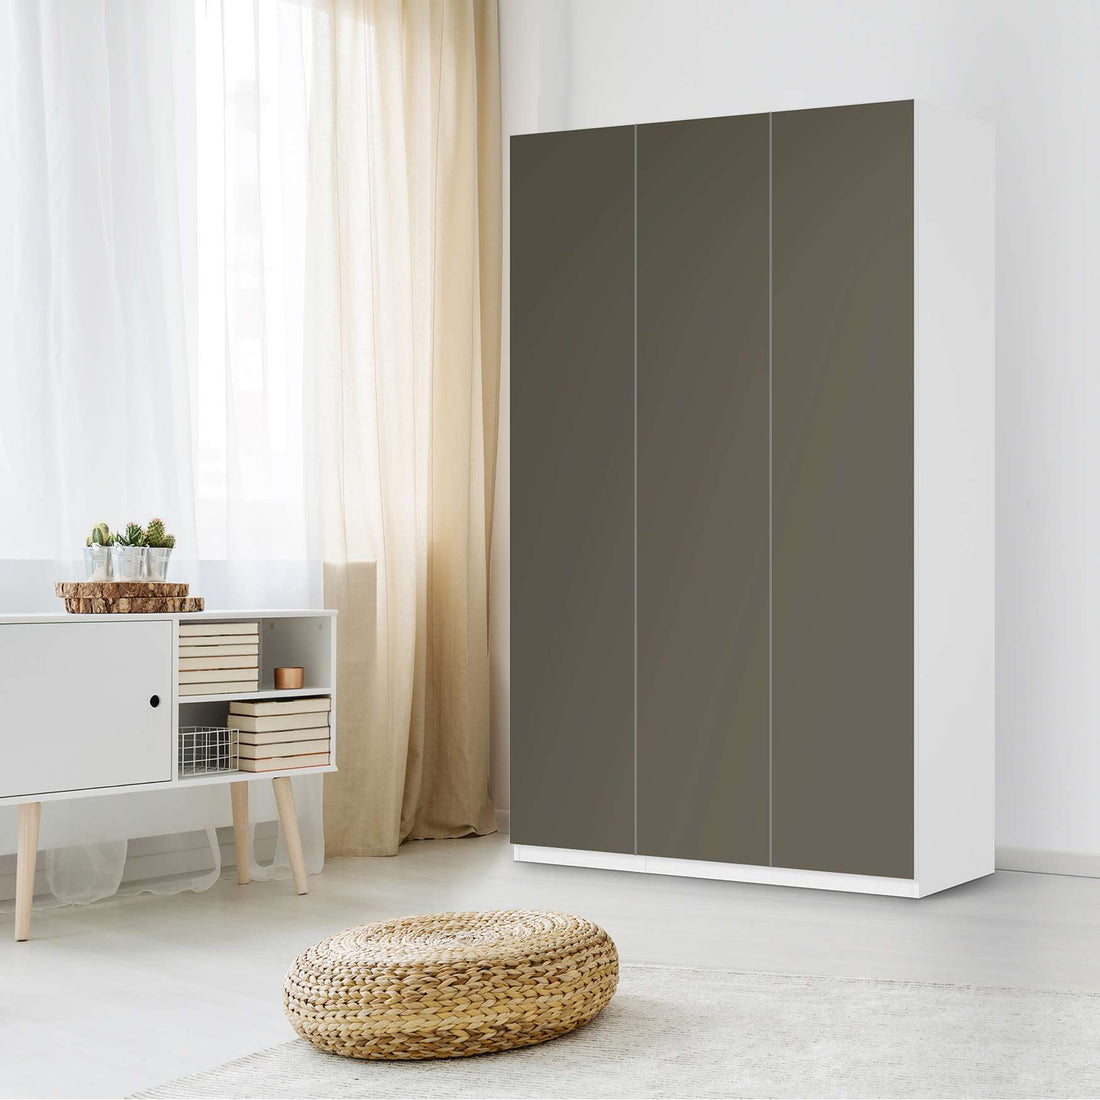 Selbstklebende Folie Braungrau Dark - IKEA Pax Schrank 236 cm Höhe - 3 Türen - Schlafzimmer